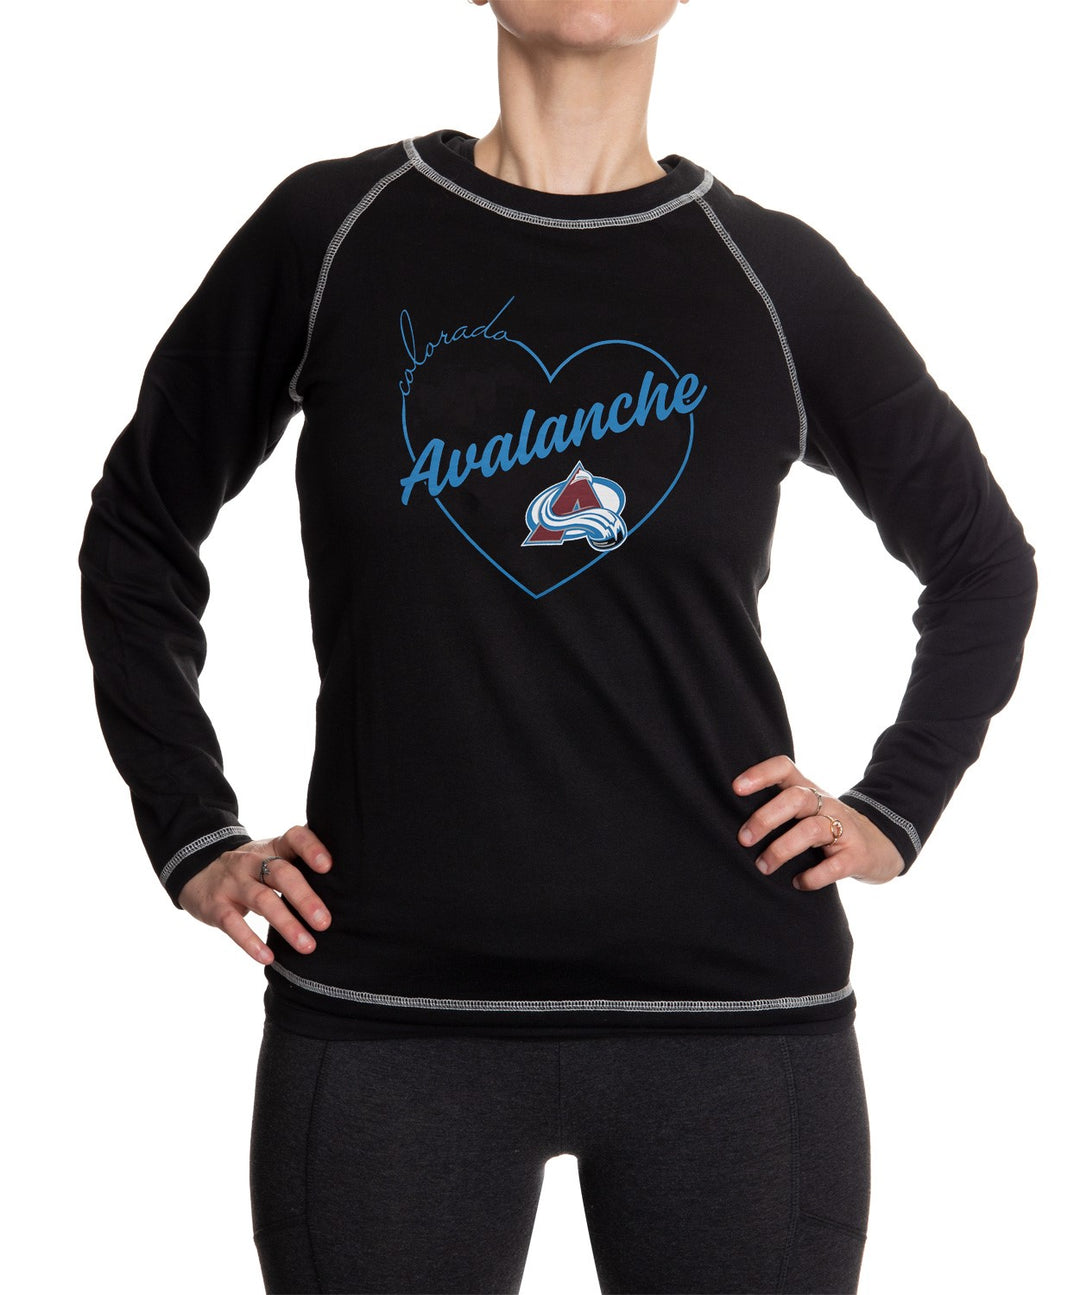 Colorado Avalanche Heart Logo Long Sleeve Shirt for Women